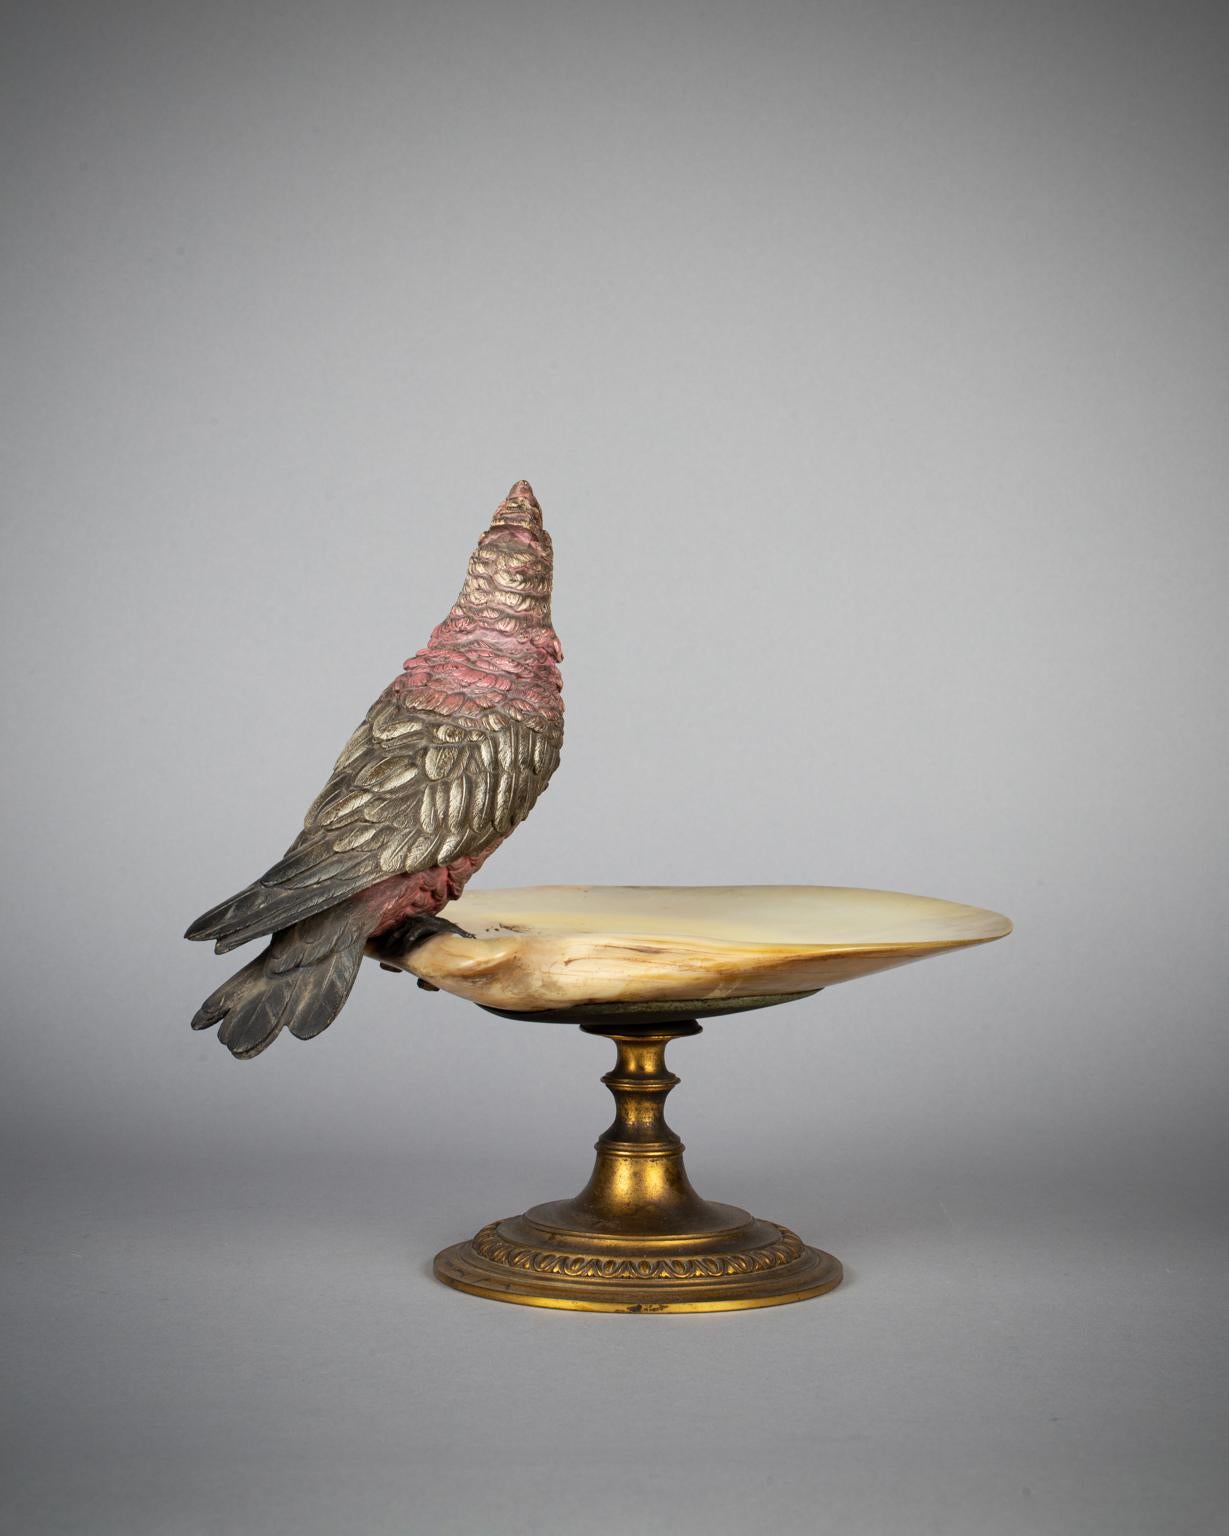 Modell eines Papageis mit rosafarbenen und gelben Federn, der auf einem runden Sockel aus vergoldetem Metall auf dem Rand eines Beckens aus Abalone-Muschel montiert ist.